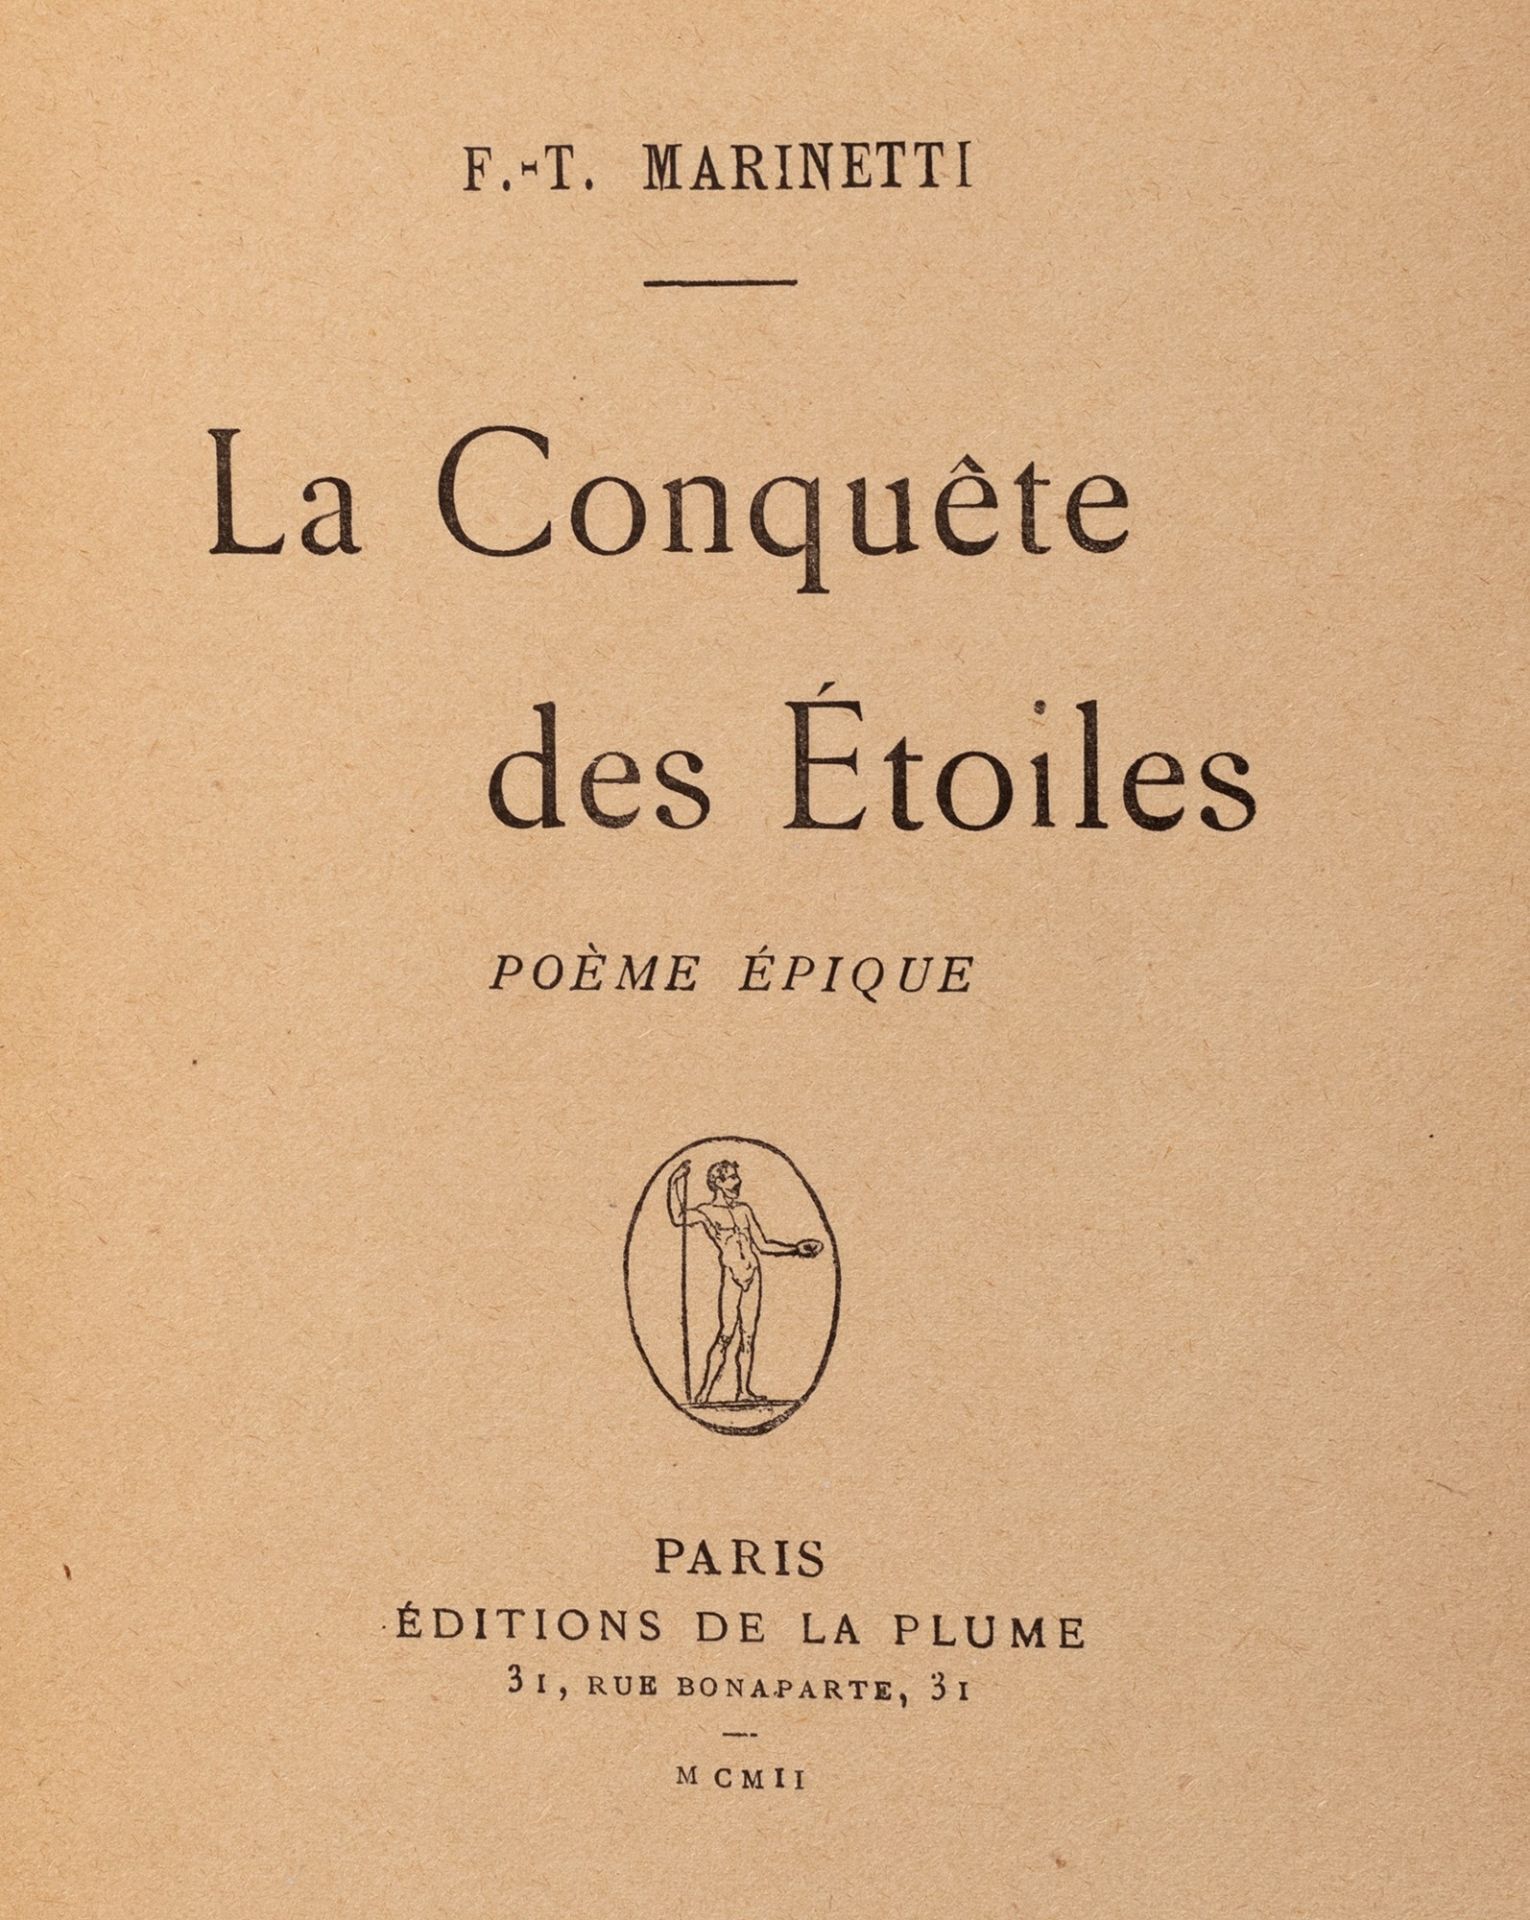 Futurismo - Marinetti, Filippo Tommaso - The Conquete des Etoiles. Poème epique. - Image 2 of 3